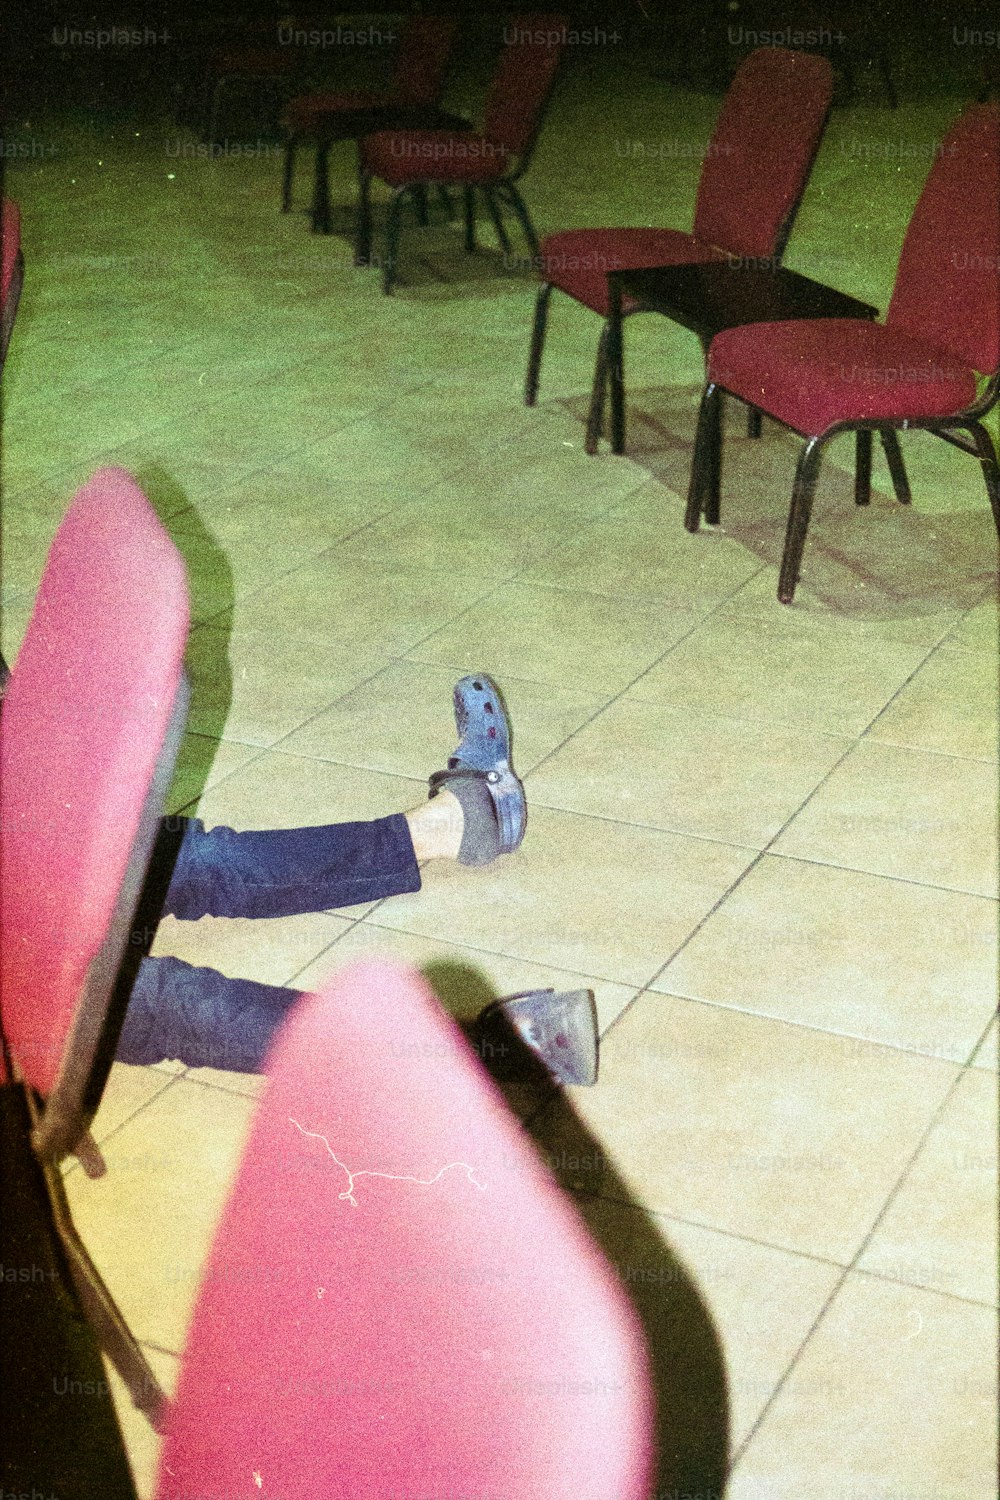 una persona tumbada en el suelo con los pies sobre una silla